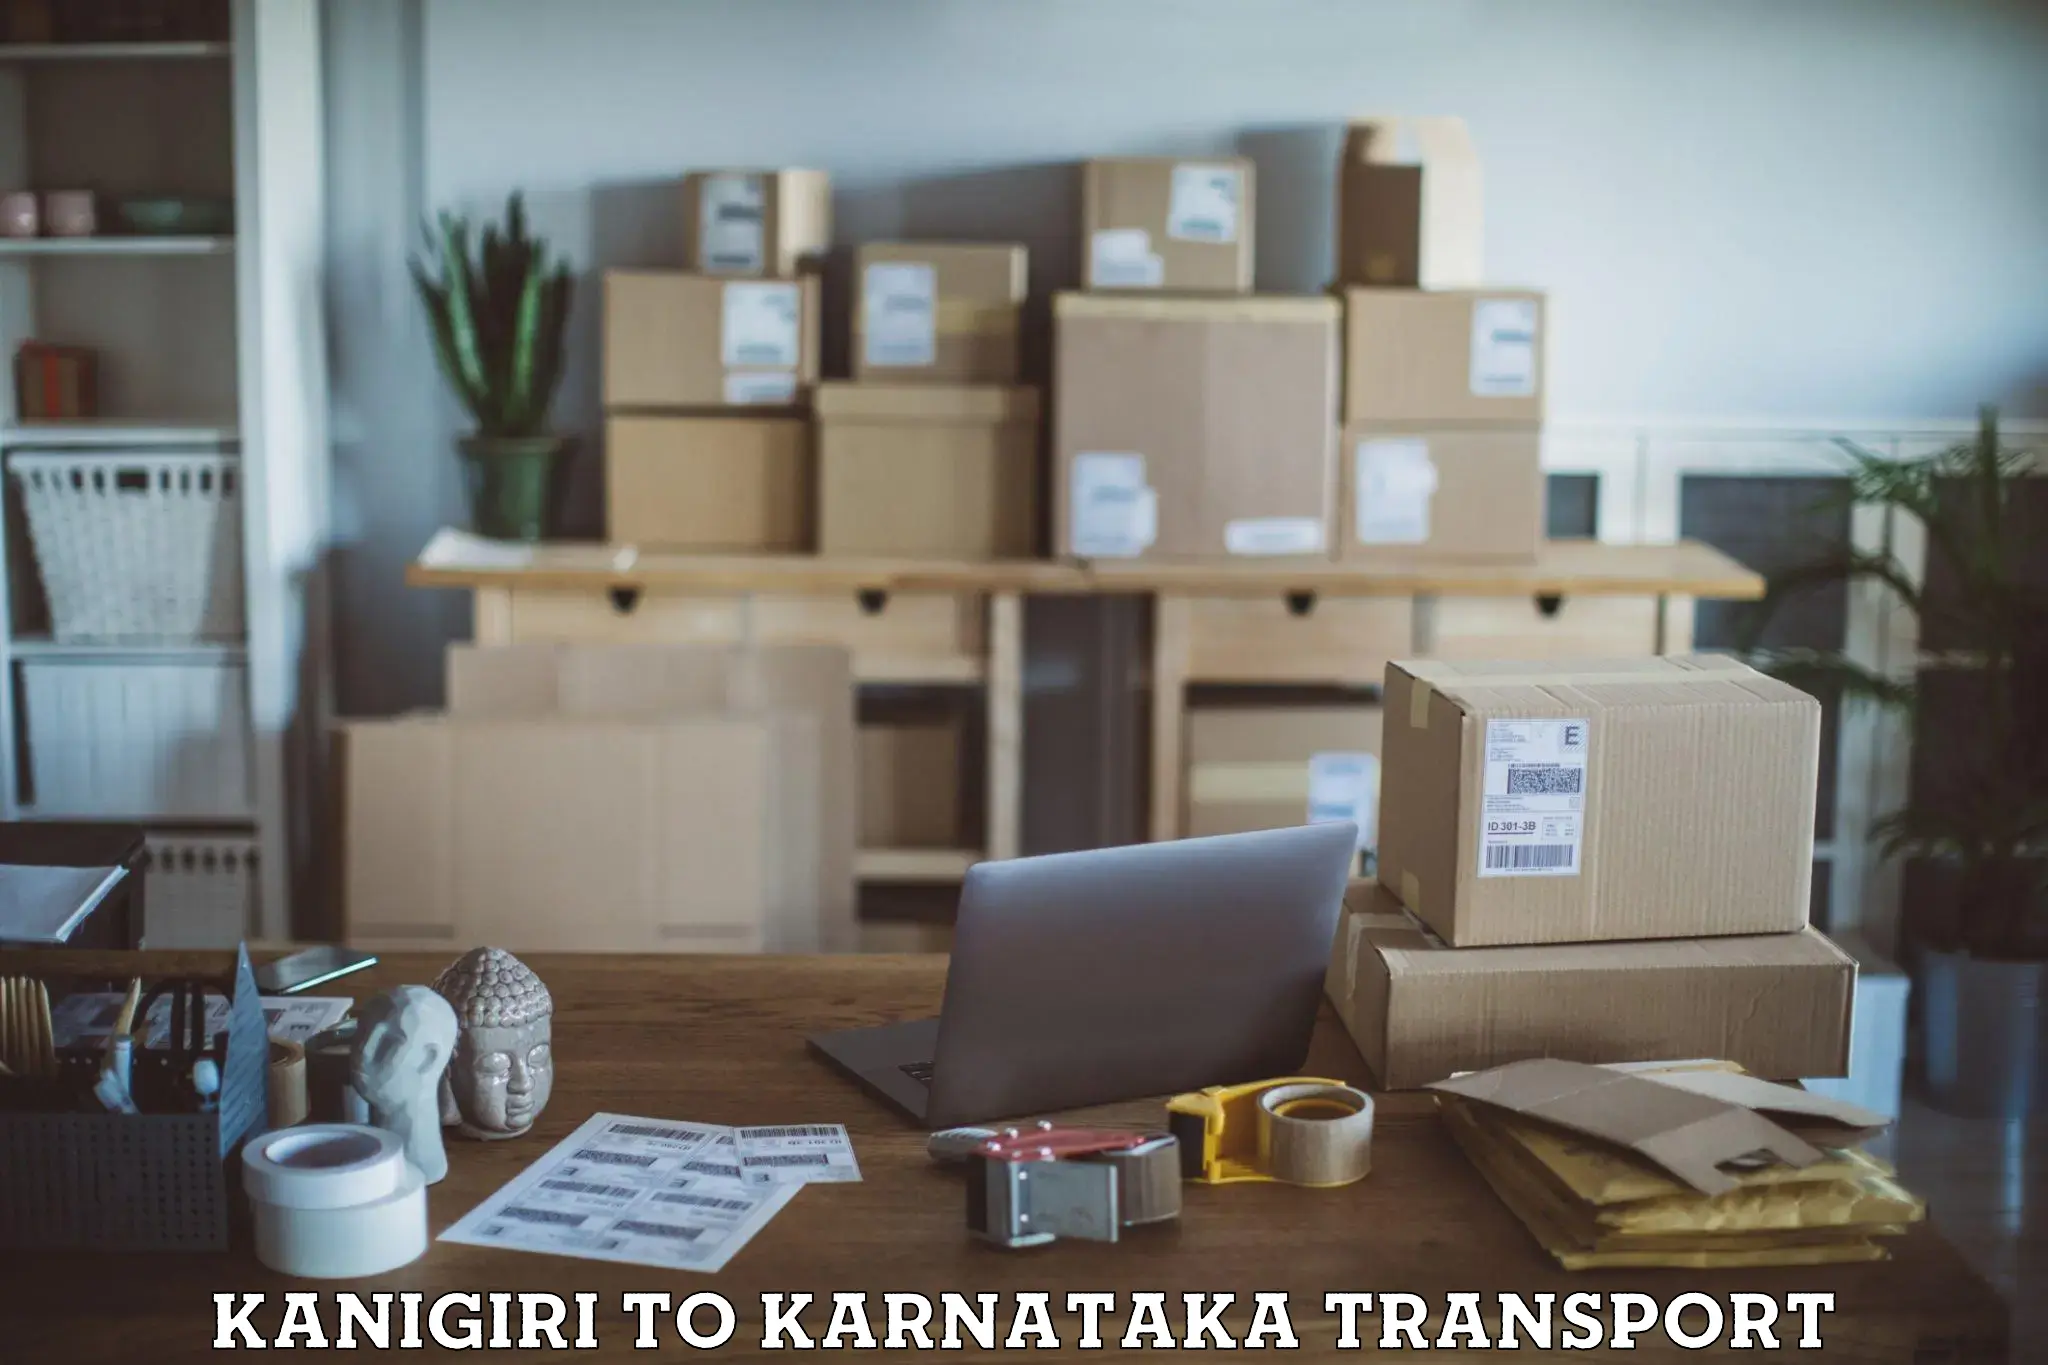 Container transport service Kanigiri to Kulshekar